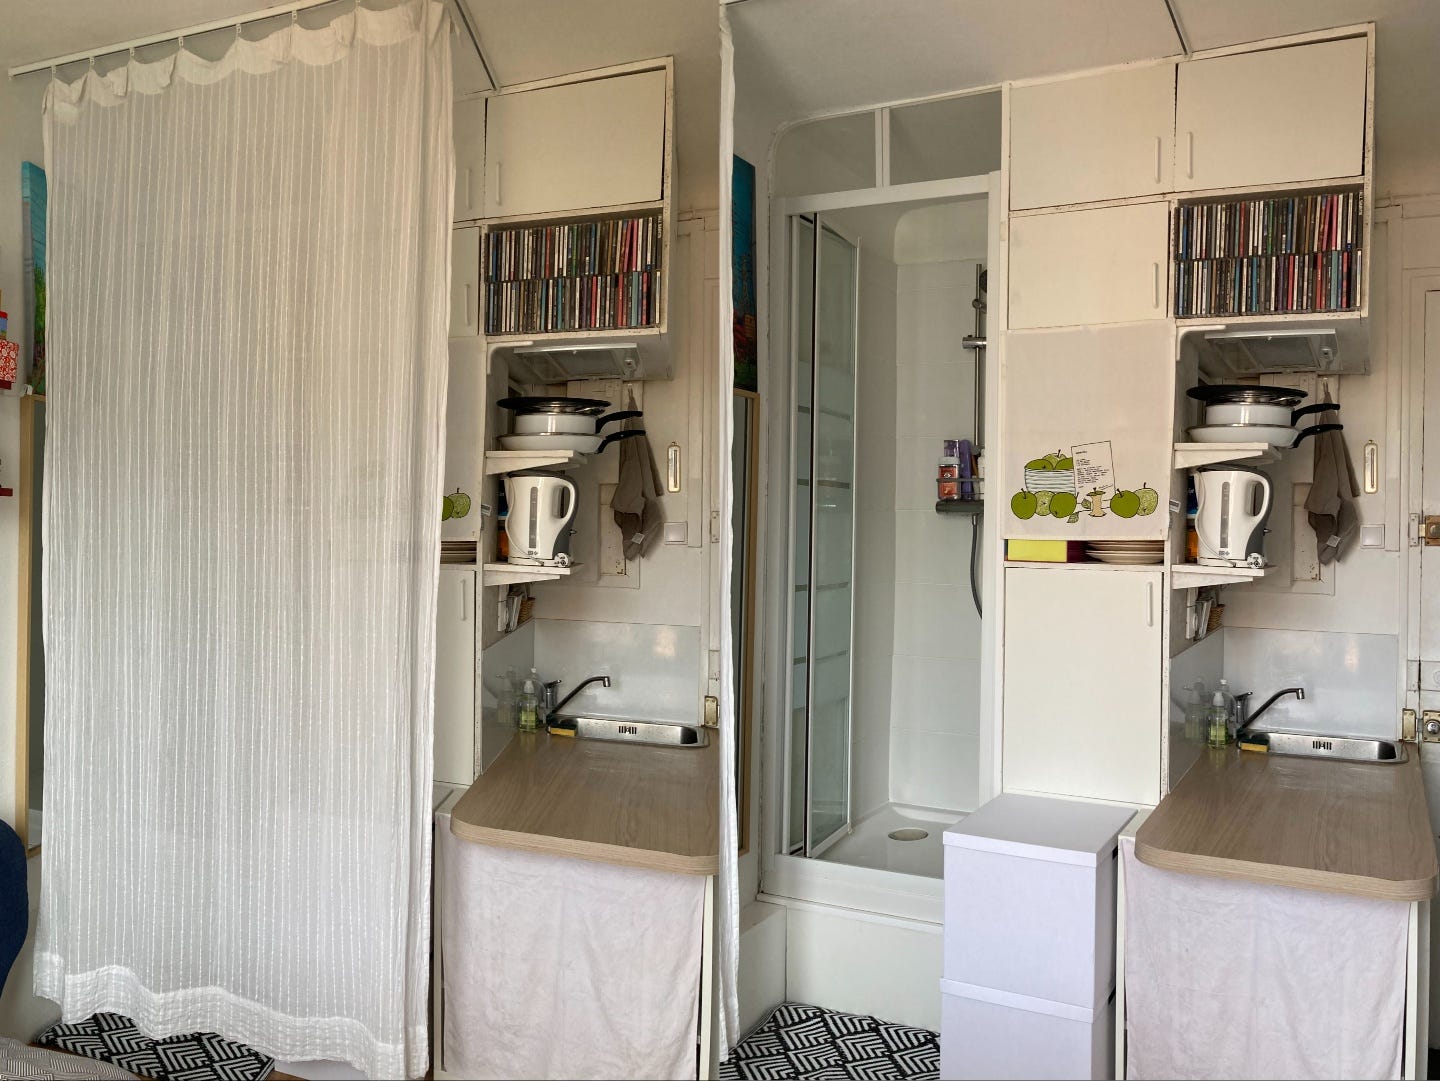 Zusammengesetztes Bild, das die Küchenzeile und eine Dusche zeigt, die hinter einem Vorhang verborgen ist.